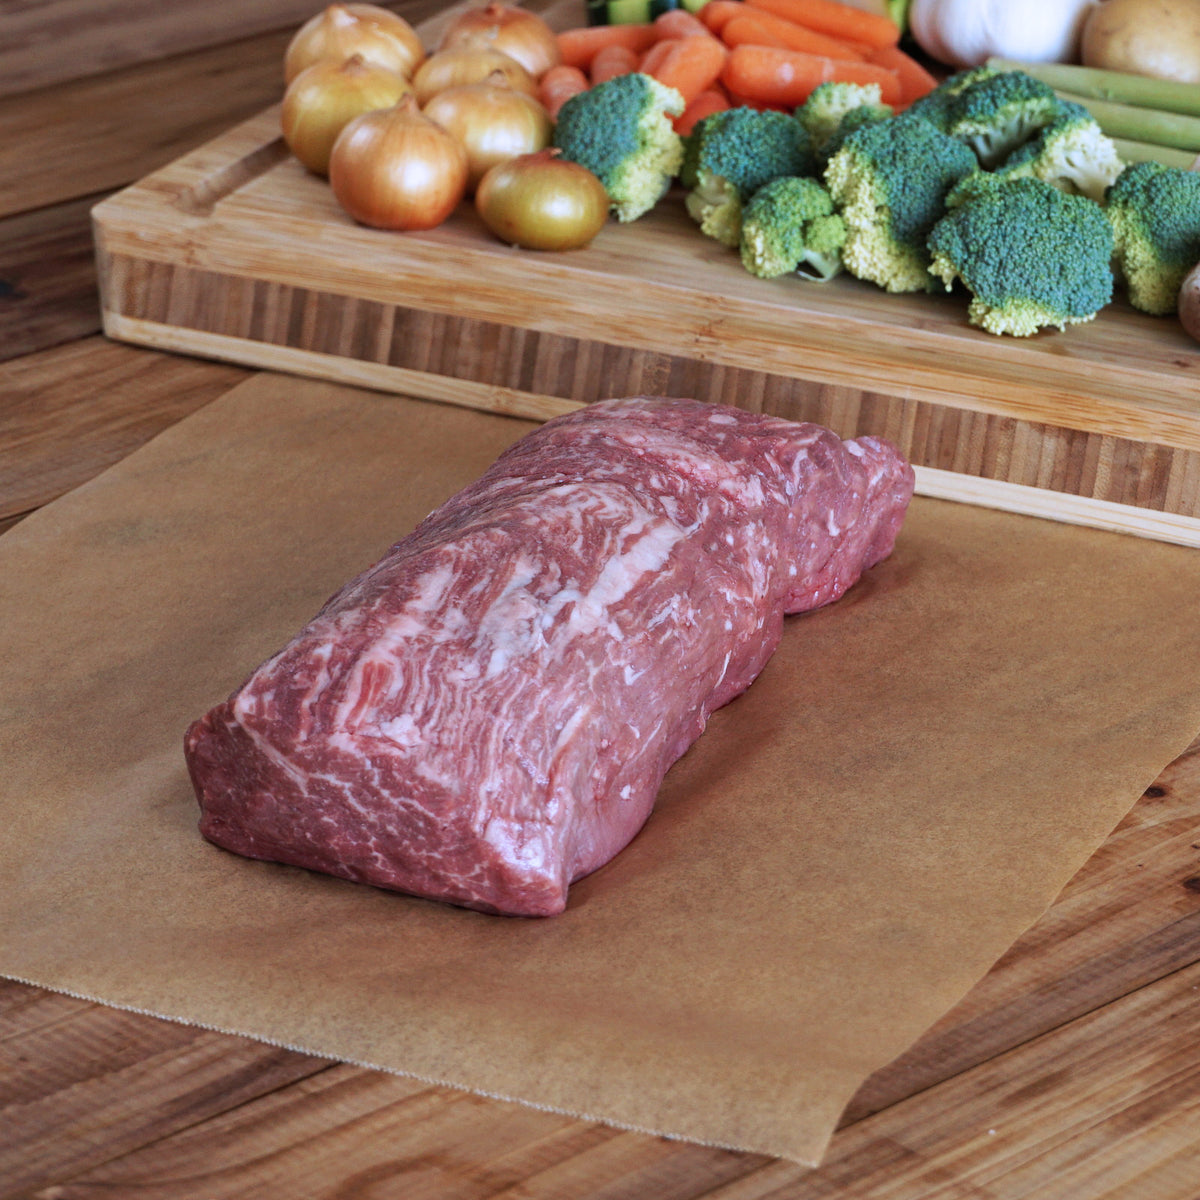 モーガン牧場ビーフ USDA プライム ヒレ ブロック グレインフェッド 塊肉 ロースト  (1kg) ホライズンファームズ